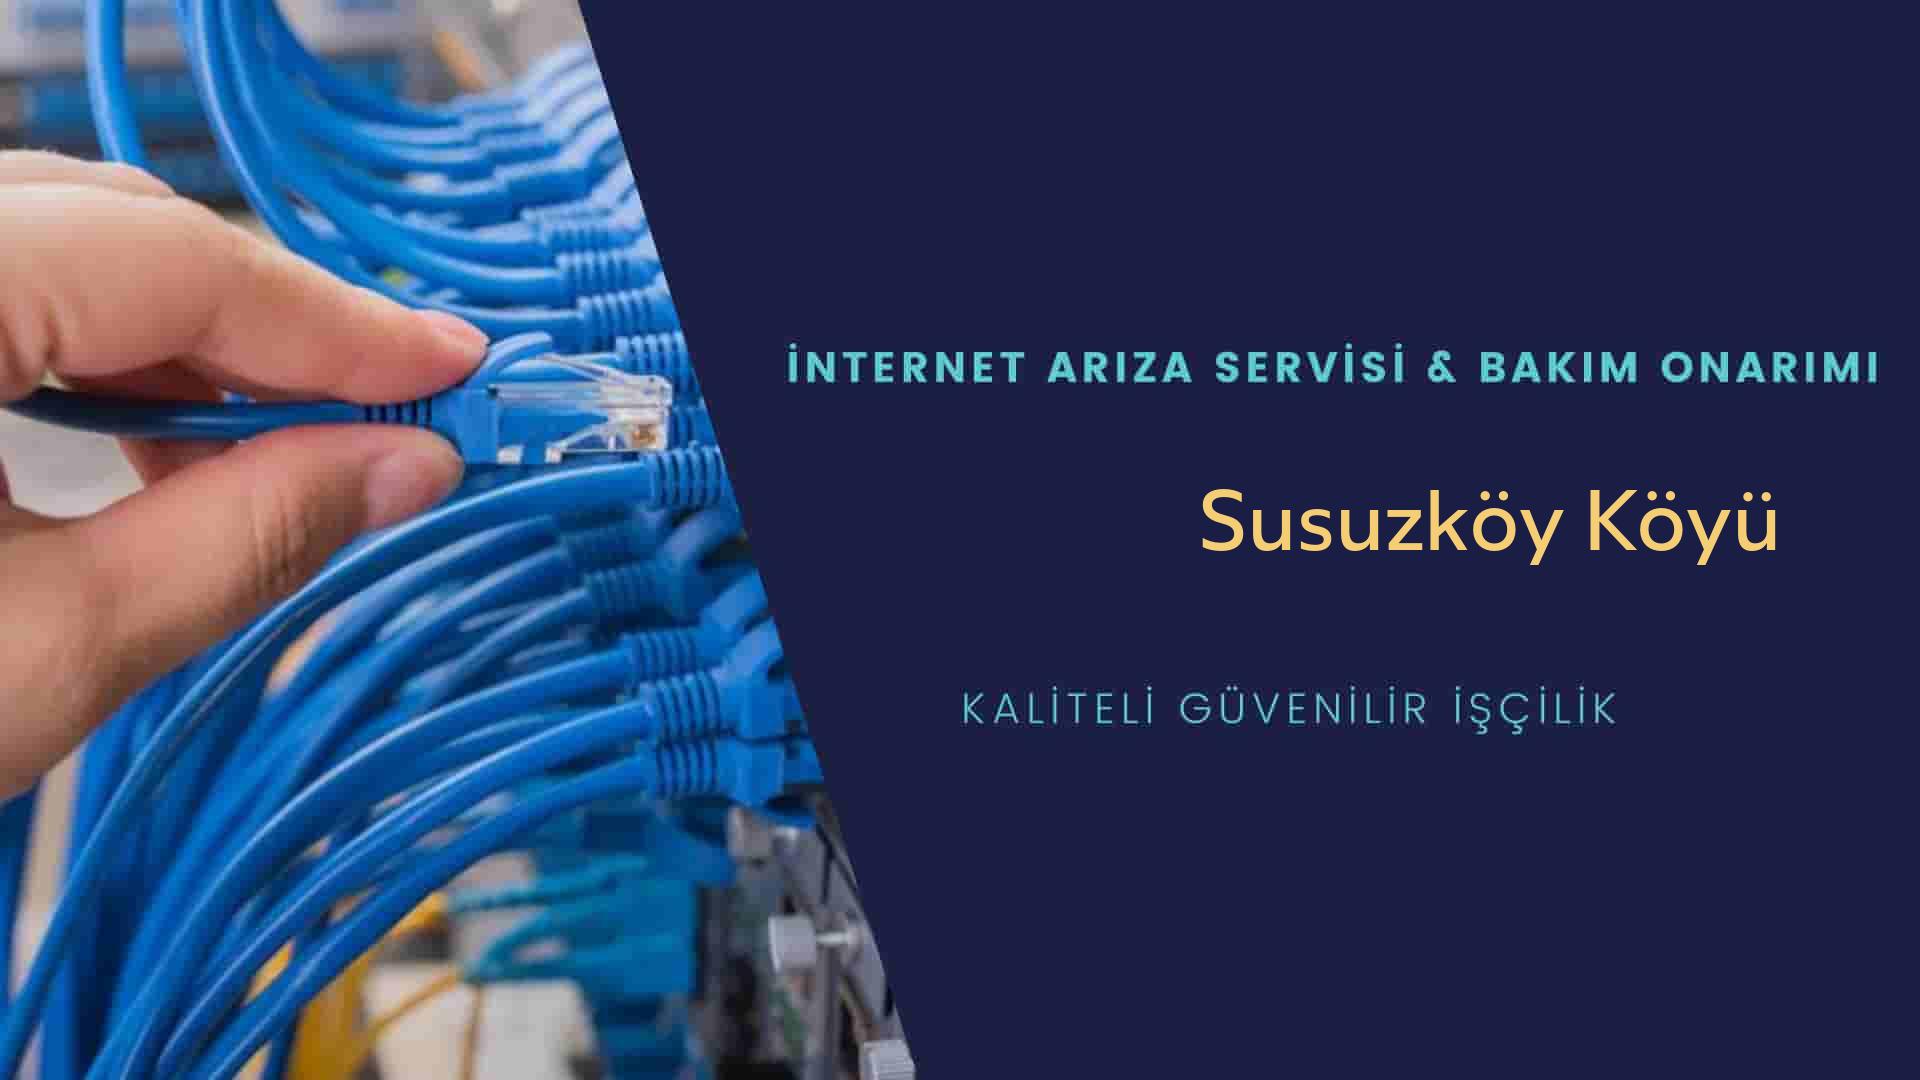 Susuzköy Köyü internet kablosu çekimi yapan yerler veya elektrikçiler mi? arıyorsunuz doğru yerdesiniz o zaman sizlere 7/24 yardımcı olacak profesyonel ustalarımız bir telefon kadar yakındır size.